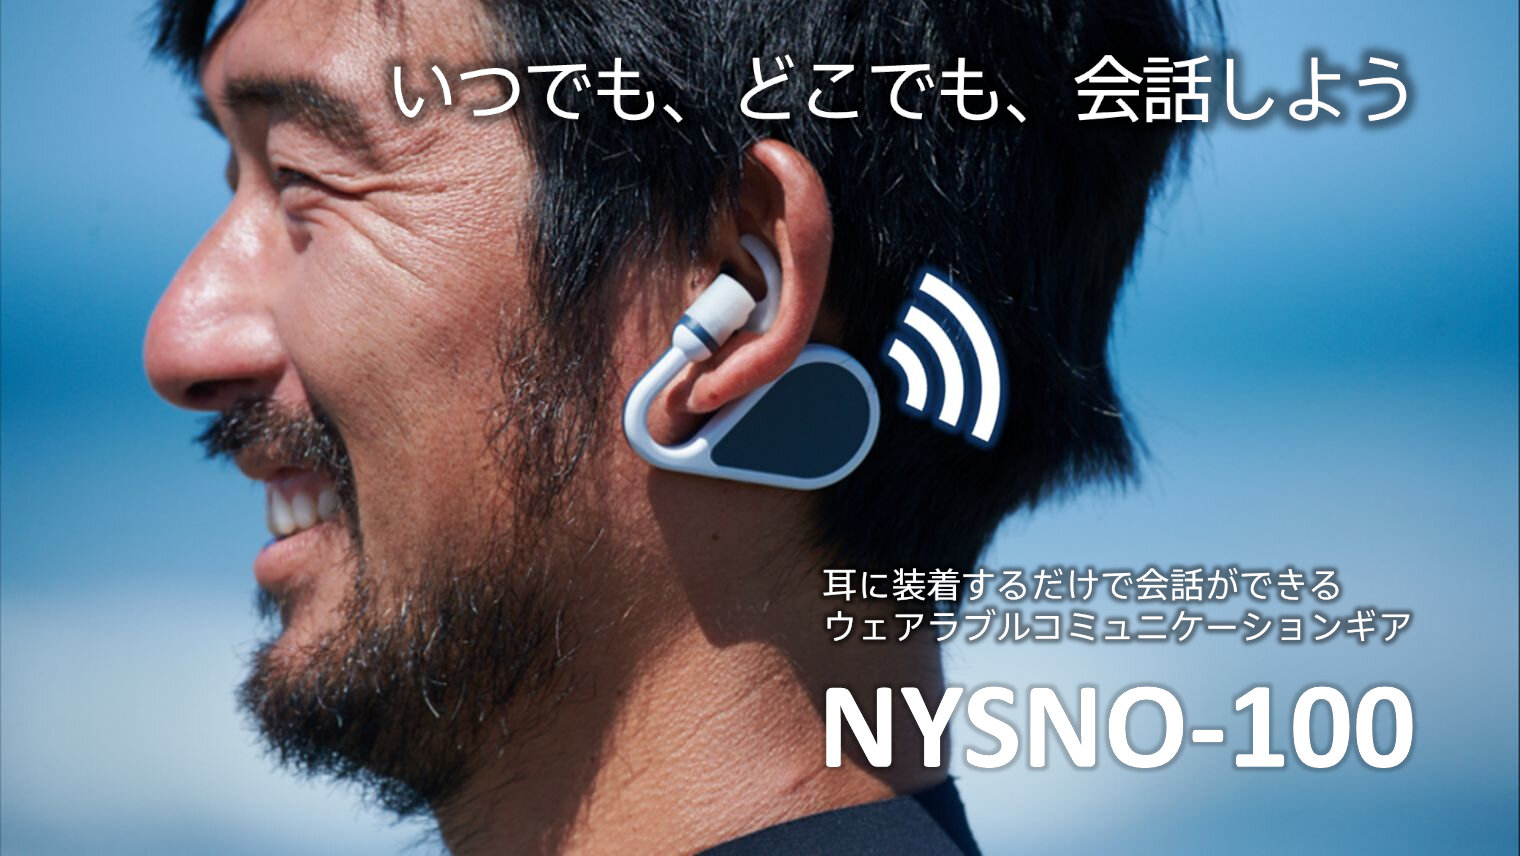 ウェアラブルコミュニケーションギア「NYSNO-100」のビジネスパートナー募集を開始